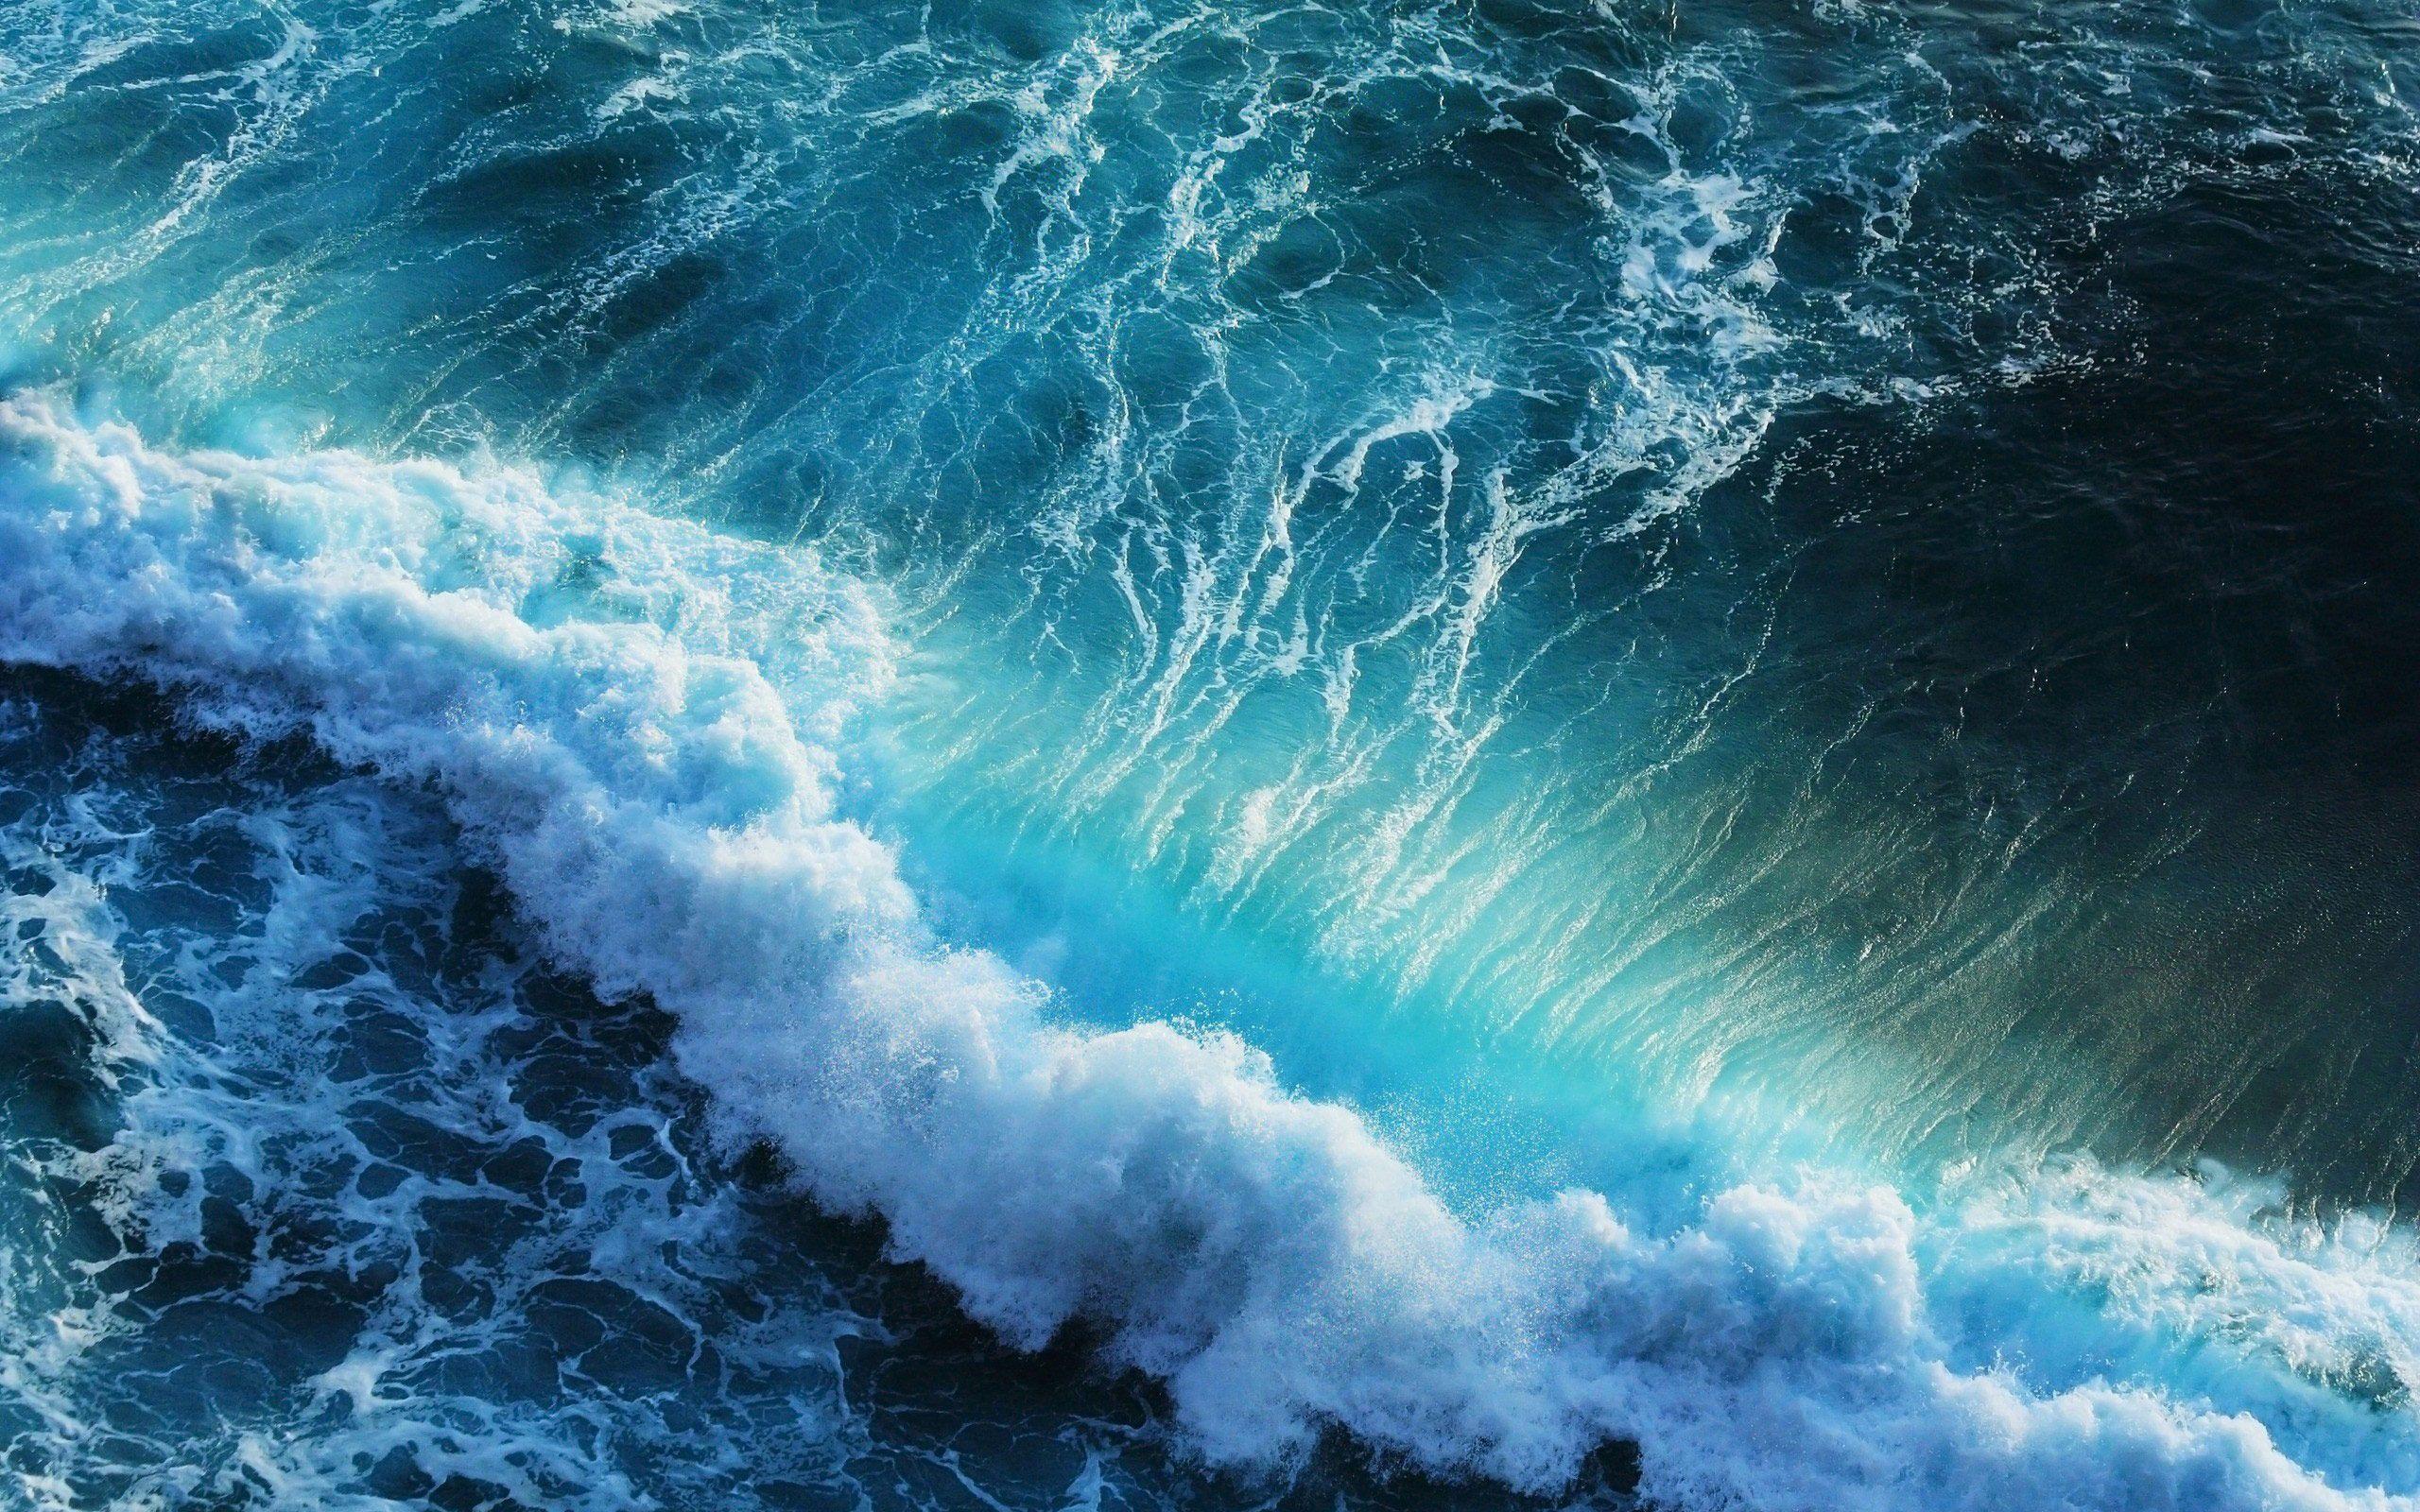 Ocean Waves Wallpapers - Top Free Ocean